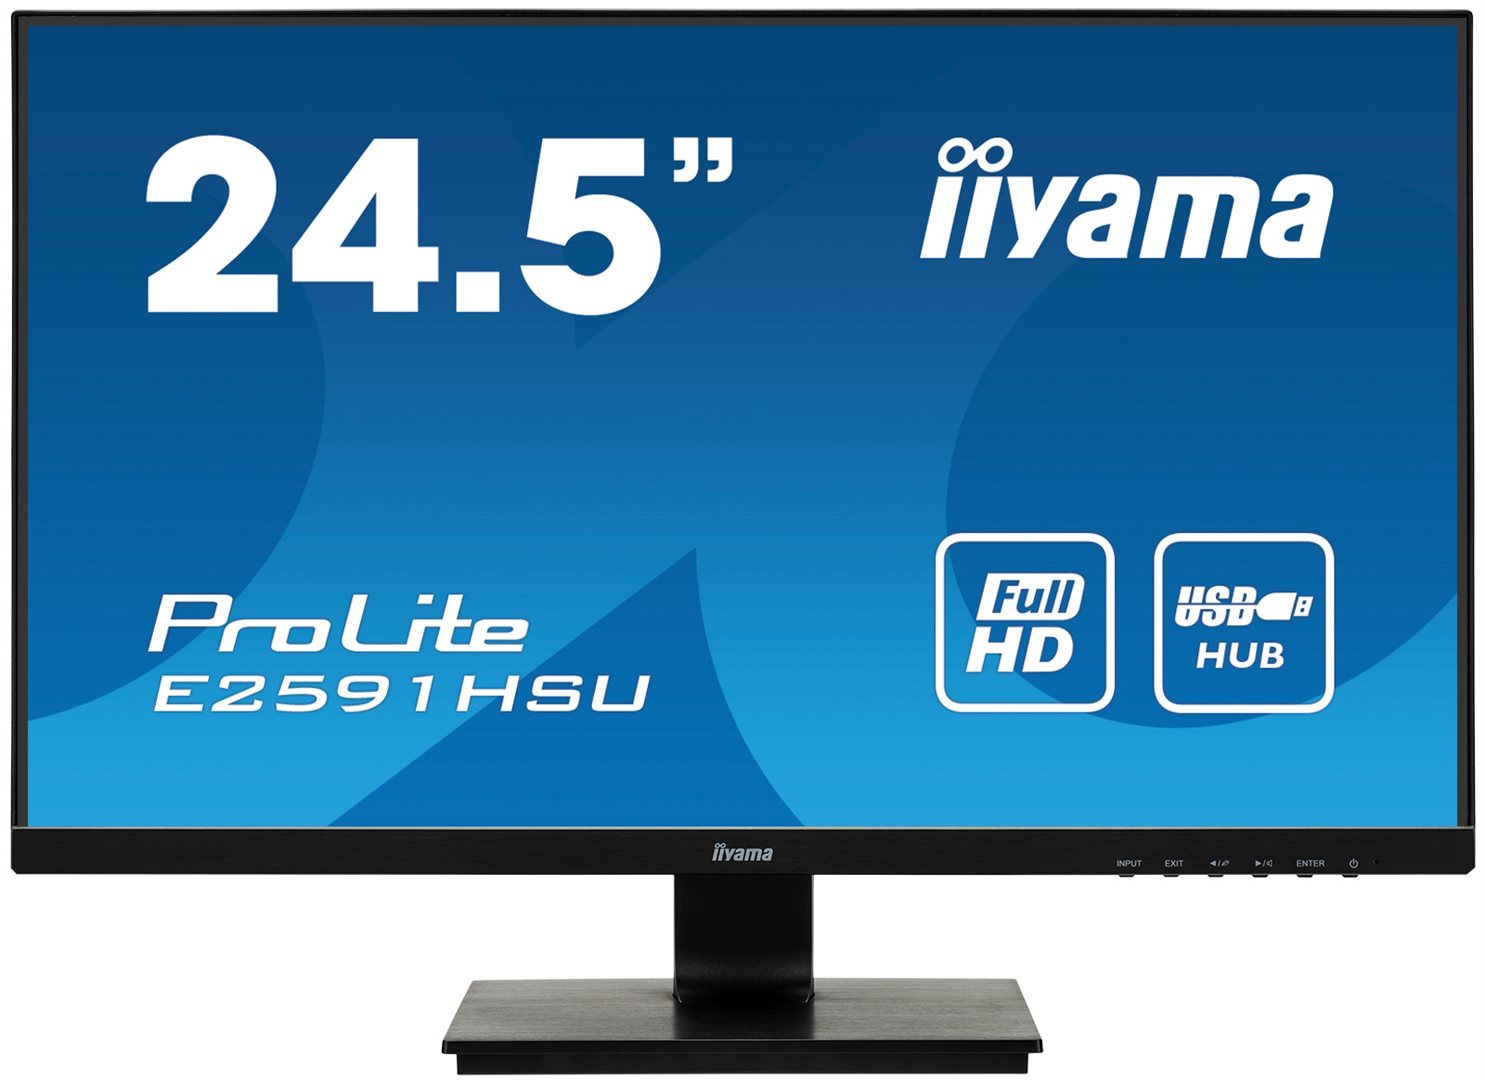 25" iiyama E2591HSU-B1: TN,FHD,VGA,DP,HDMI,USB